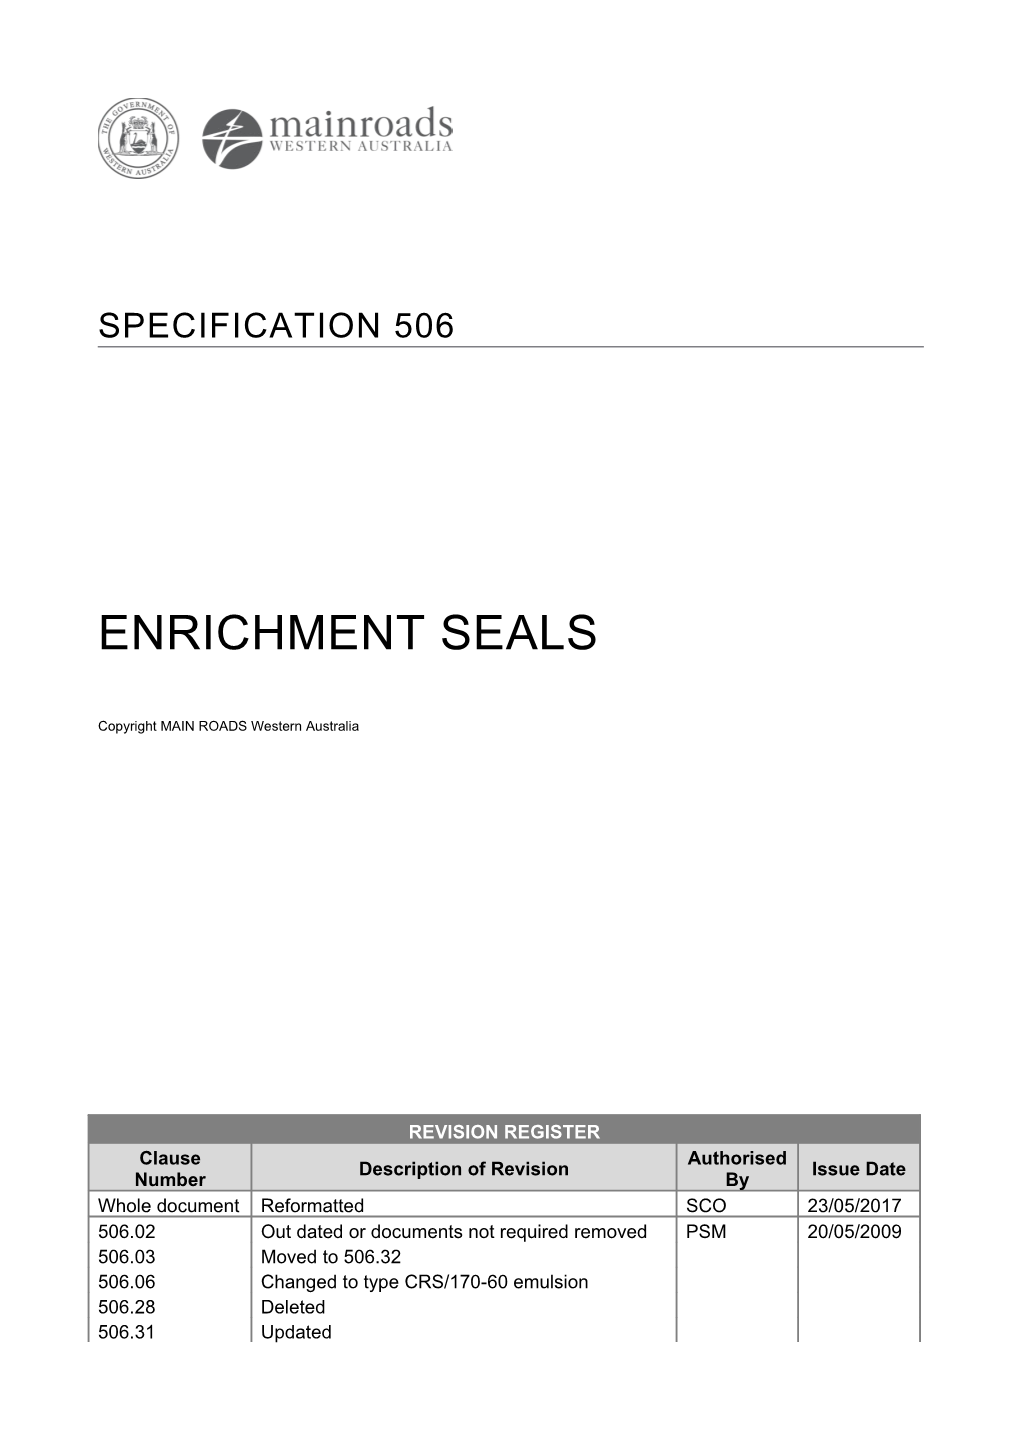 Enrichment Seals